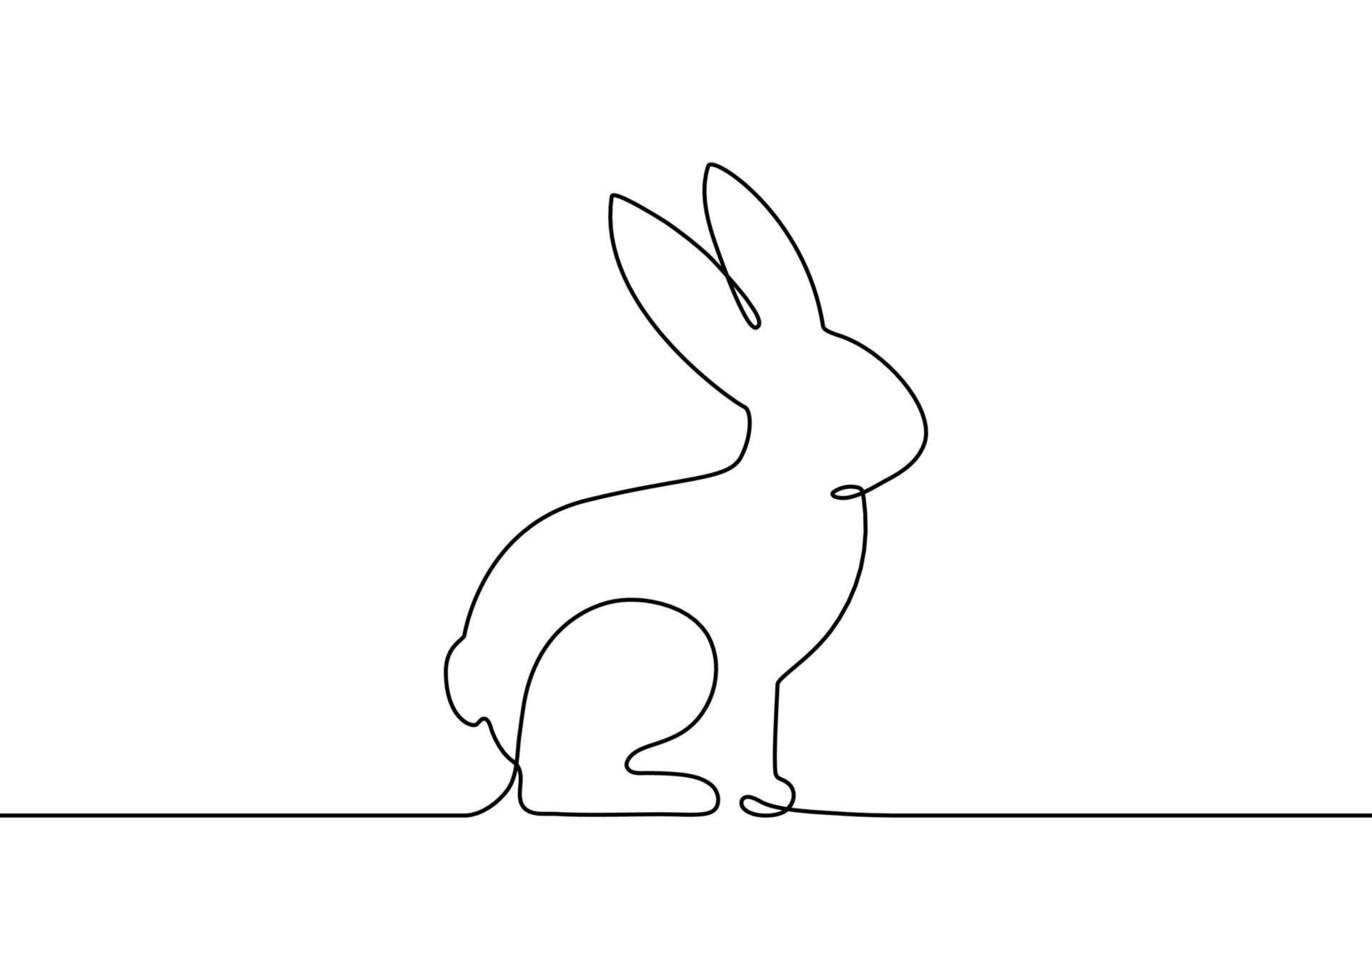 Hase, Kaninchenkontursilhouette, eine durchgehende Strichzeichnung. einfacher abstrakter Umriss. Häschenseitenansicht für Ostern. Profil von Kaninchenhaustier. Vektorgrafik vektor